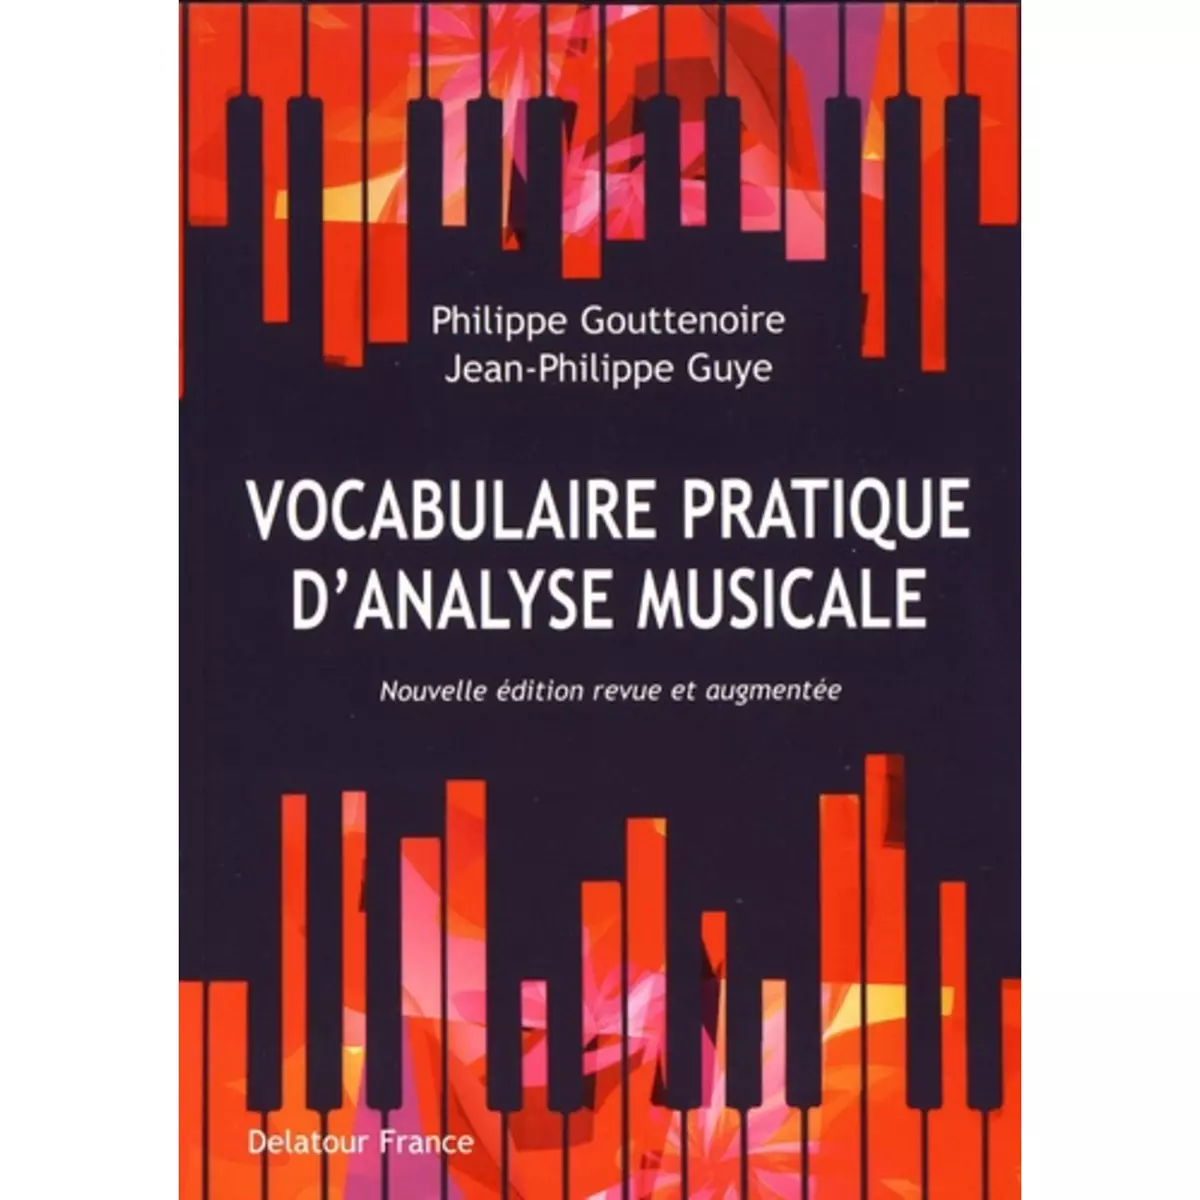  VOCABULAIRE PRATIQUE D'ANALYSE MUSICALE. 2E EDITION REVUE ET AUGMENTEE, Gouttenoire Philippe